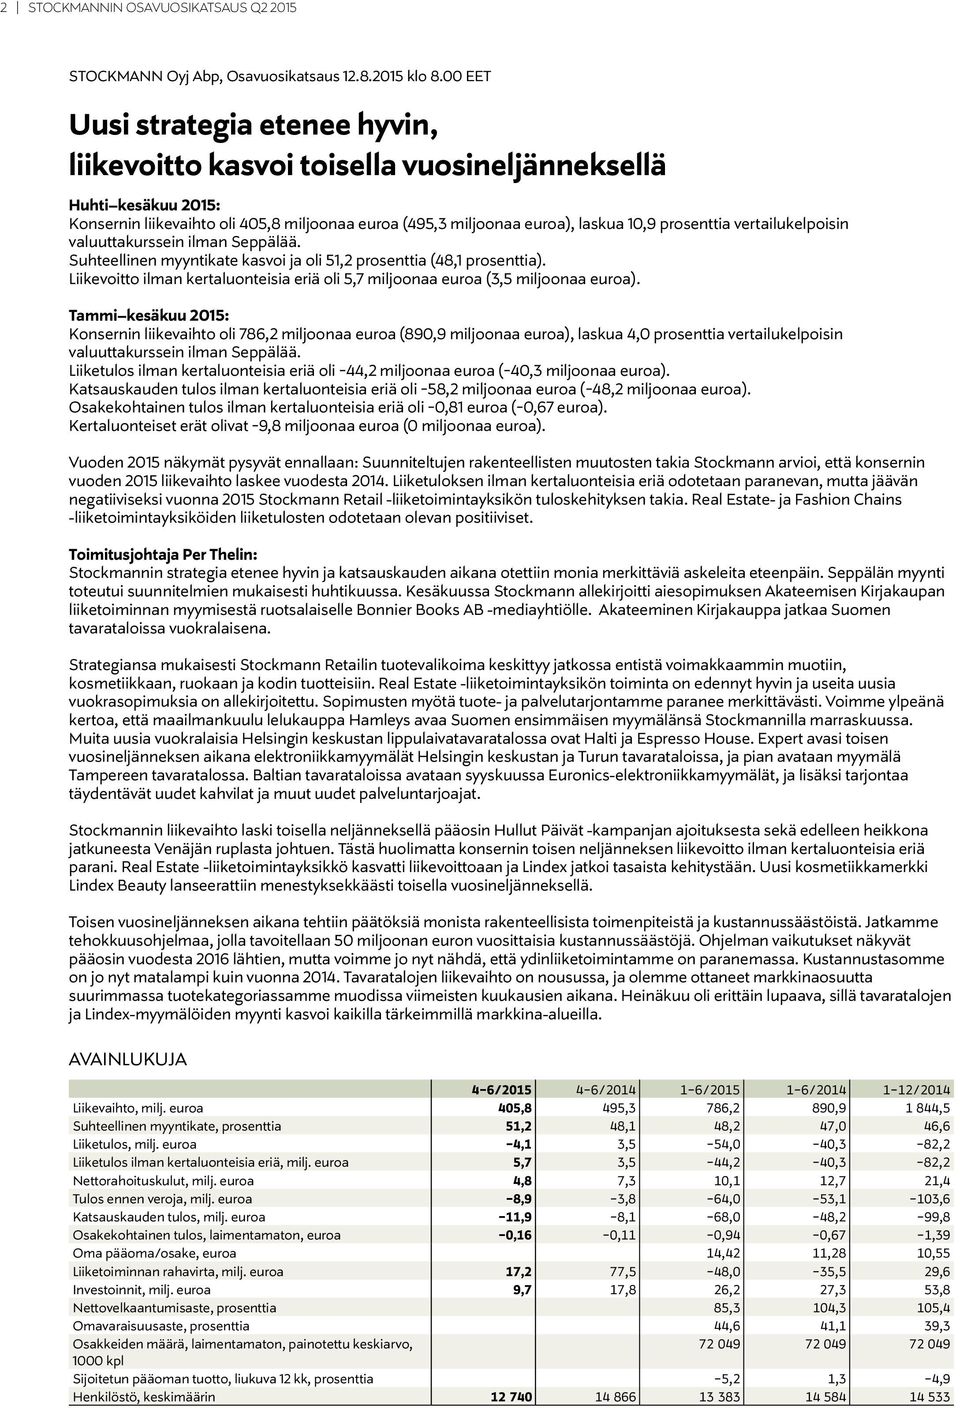 vertailukelpoisin valuuttakurssein ilman Seppälää. Suhteellinen myyntikate kasvoi ja oli 51,2 prosenttia (48,1 prosenttia).